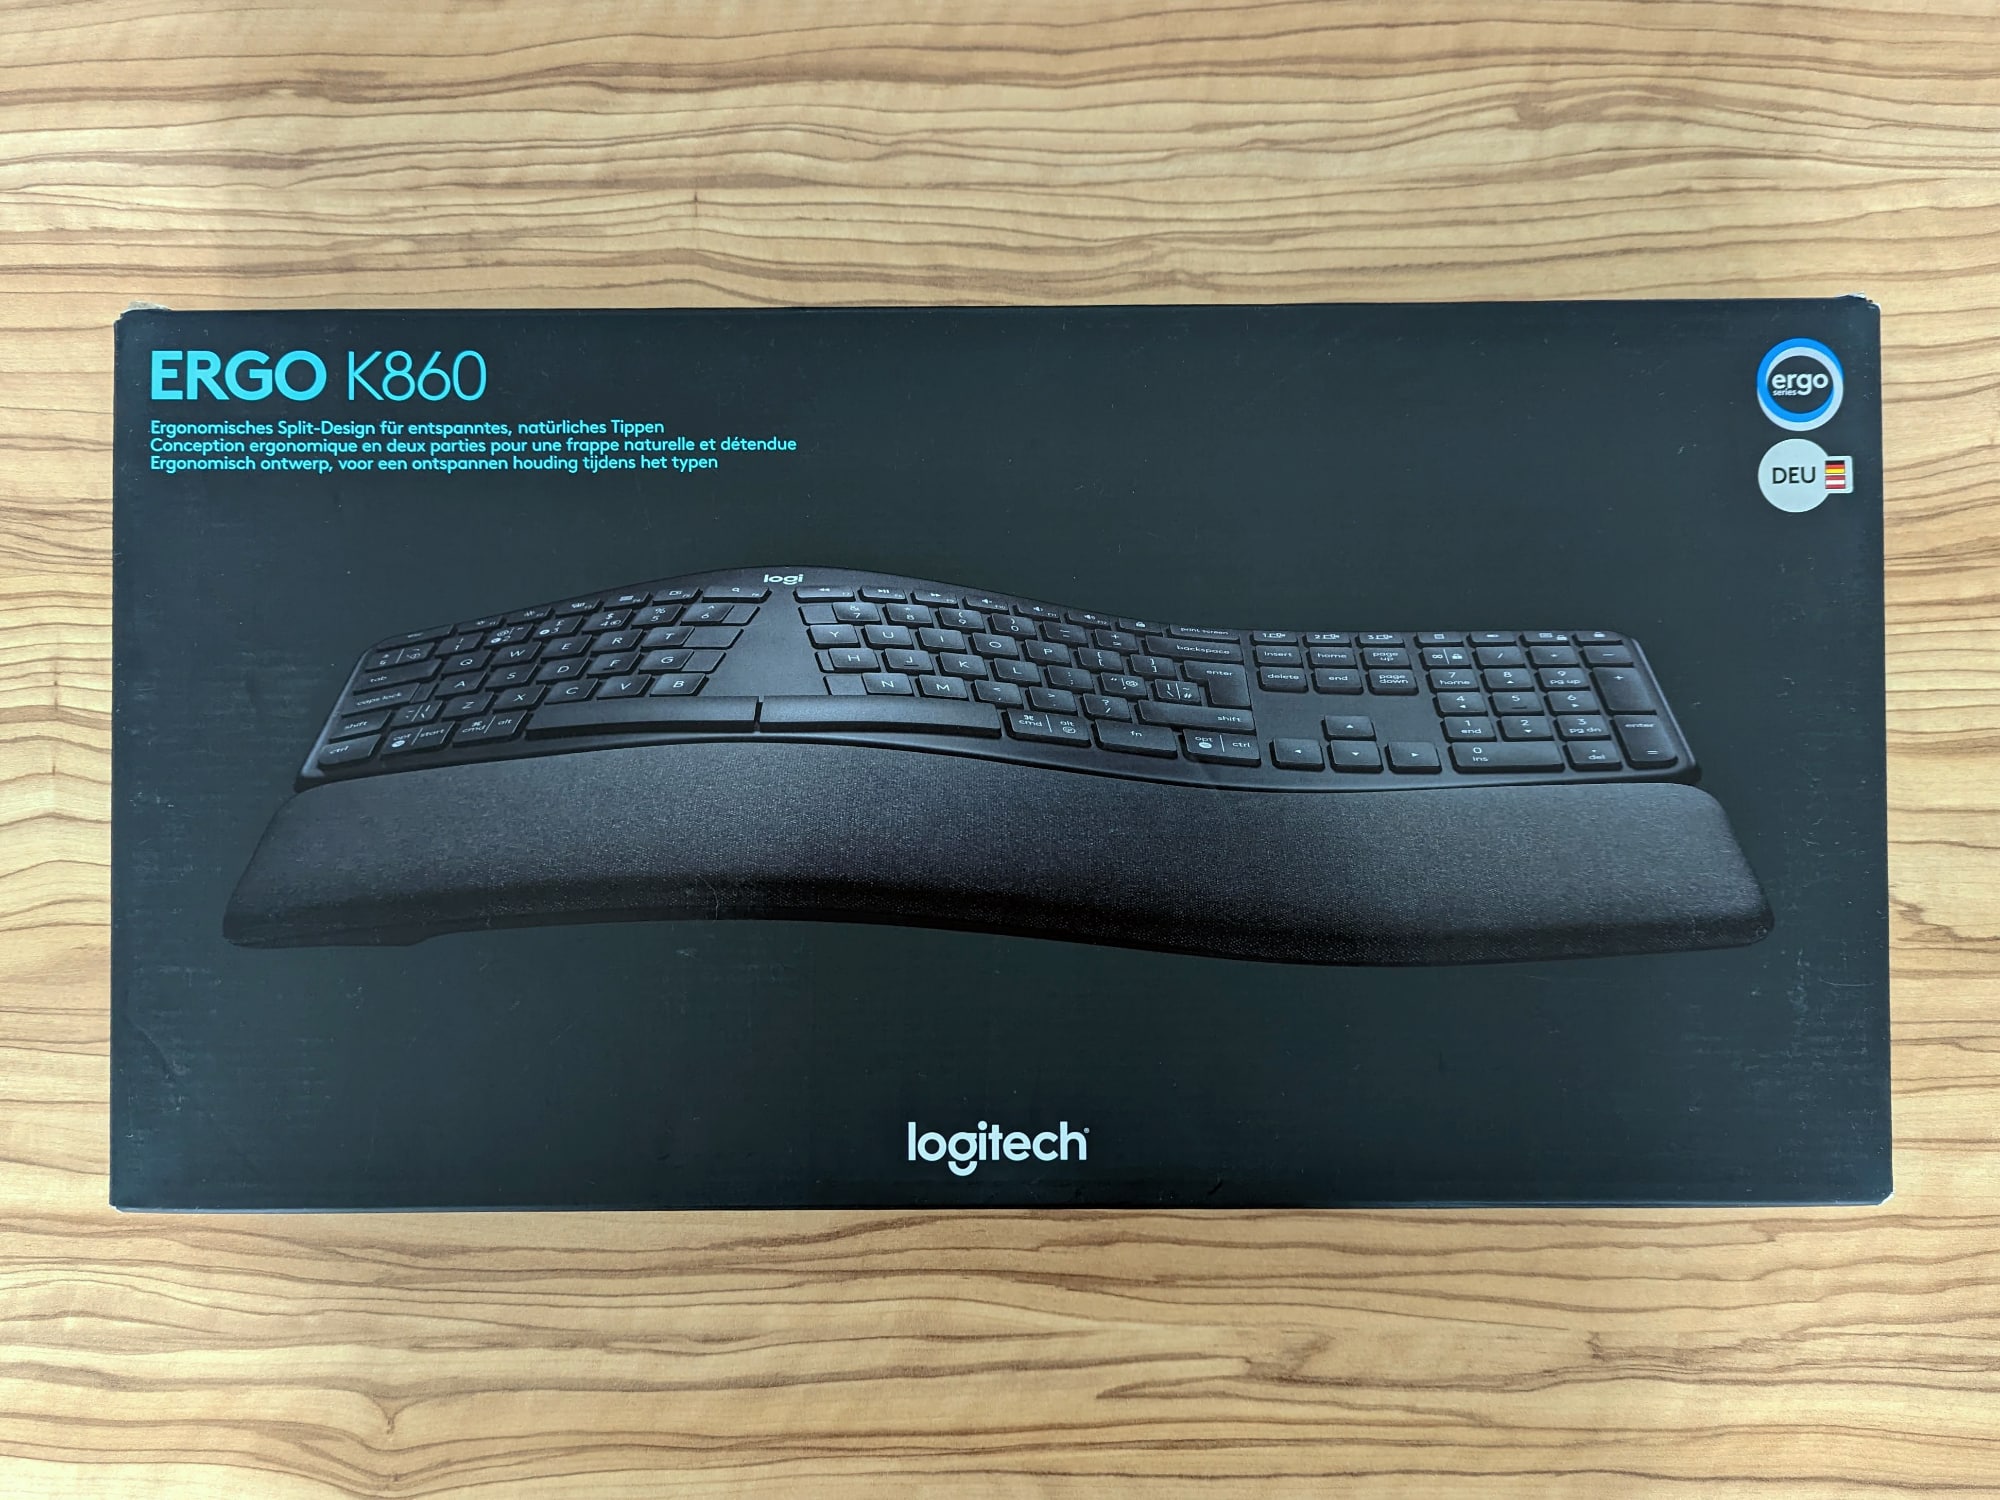 Logitech Ergo K860 review - layout split keyboard ergonomic with